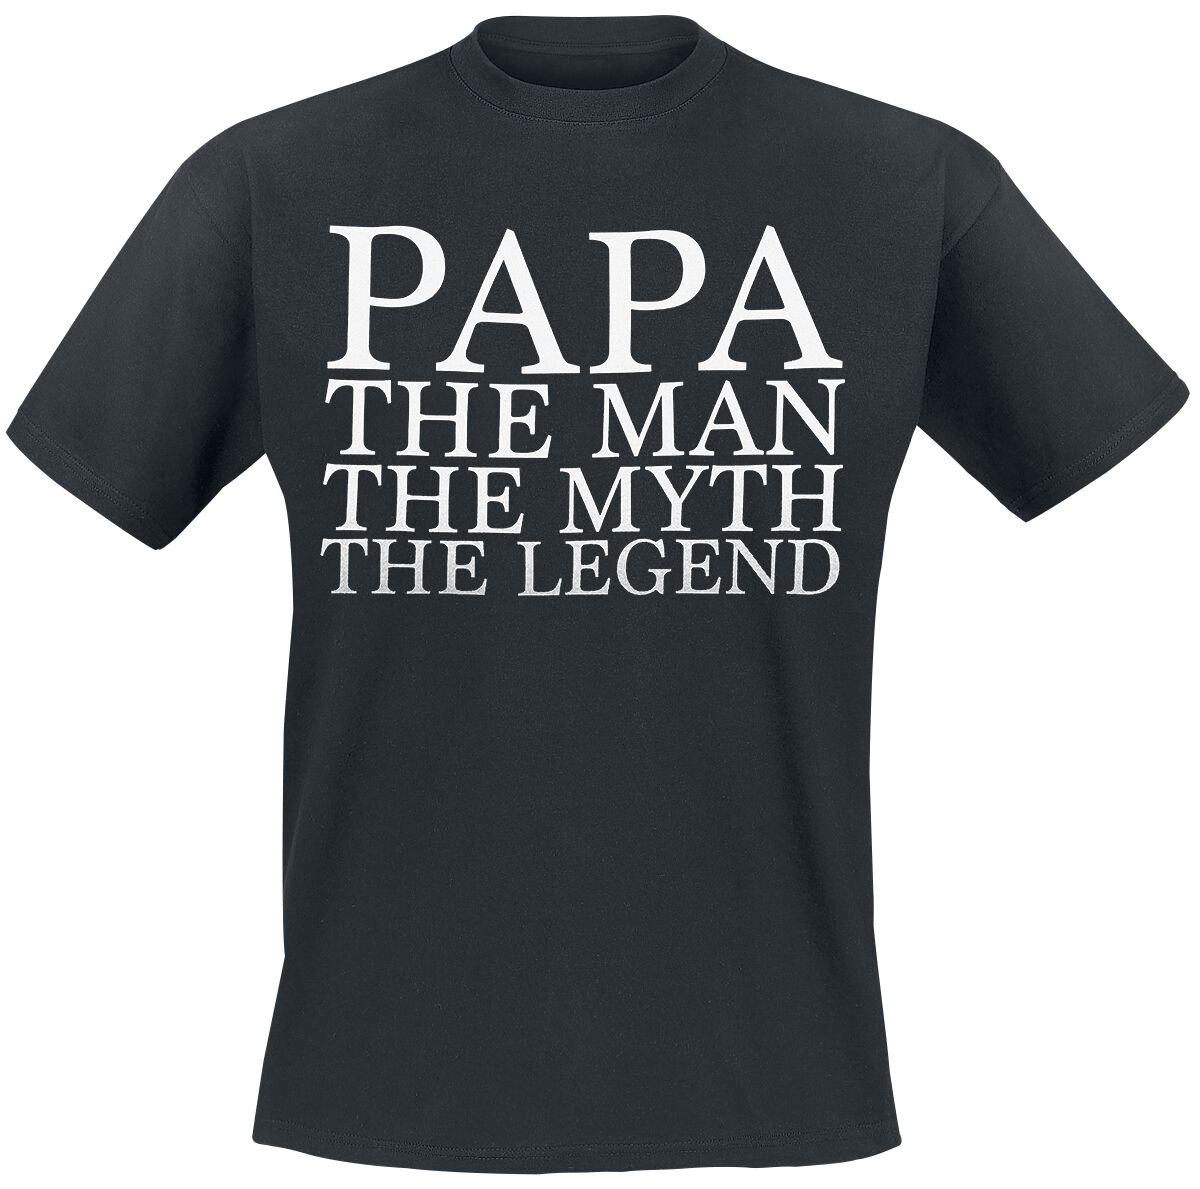 Familie & Freunde T-Shirt - Papa - The Man - M bis 3XL - für Männer - Größe XXL - schwarz